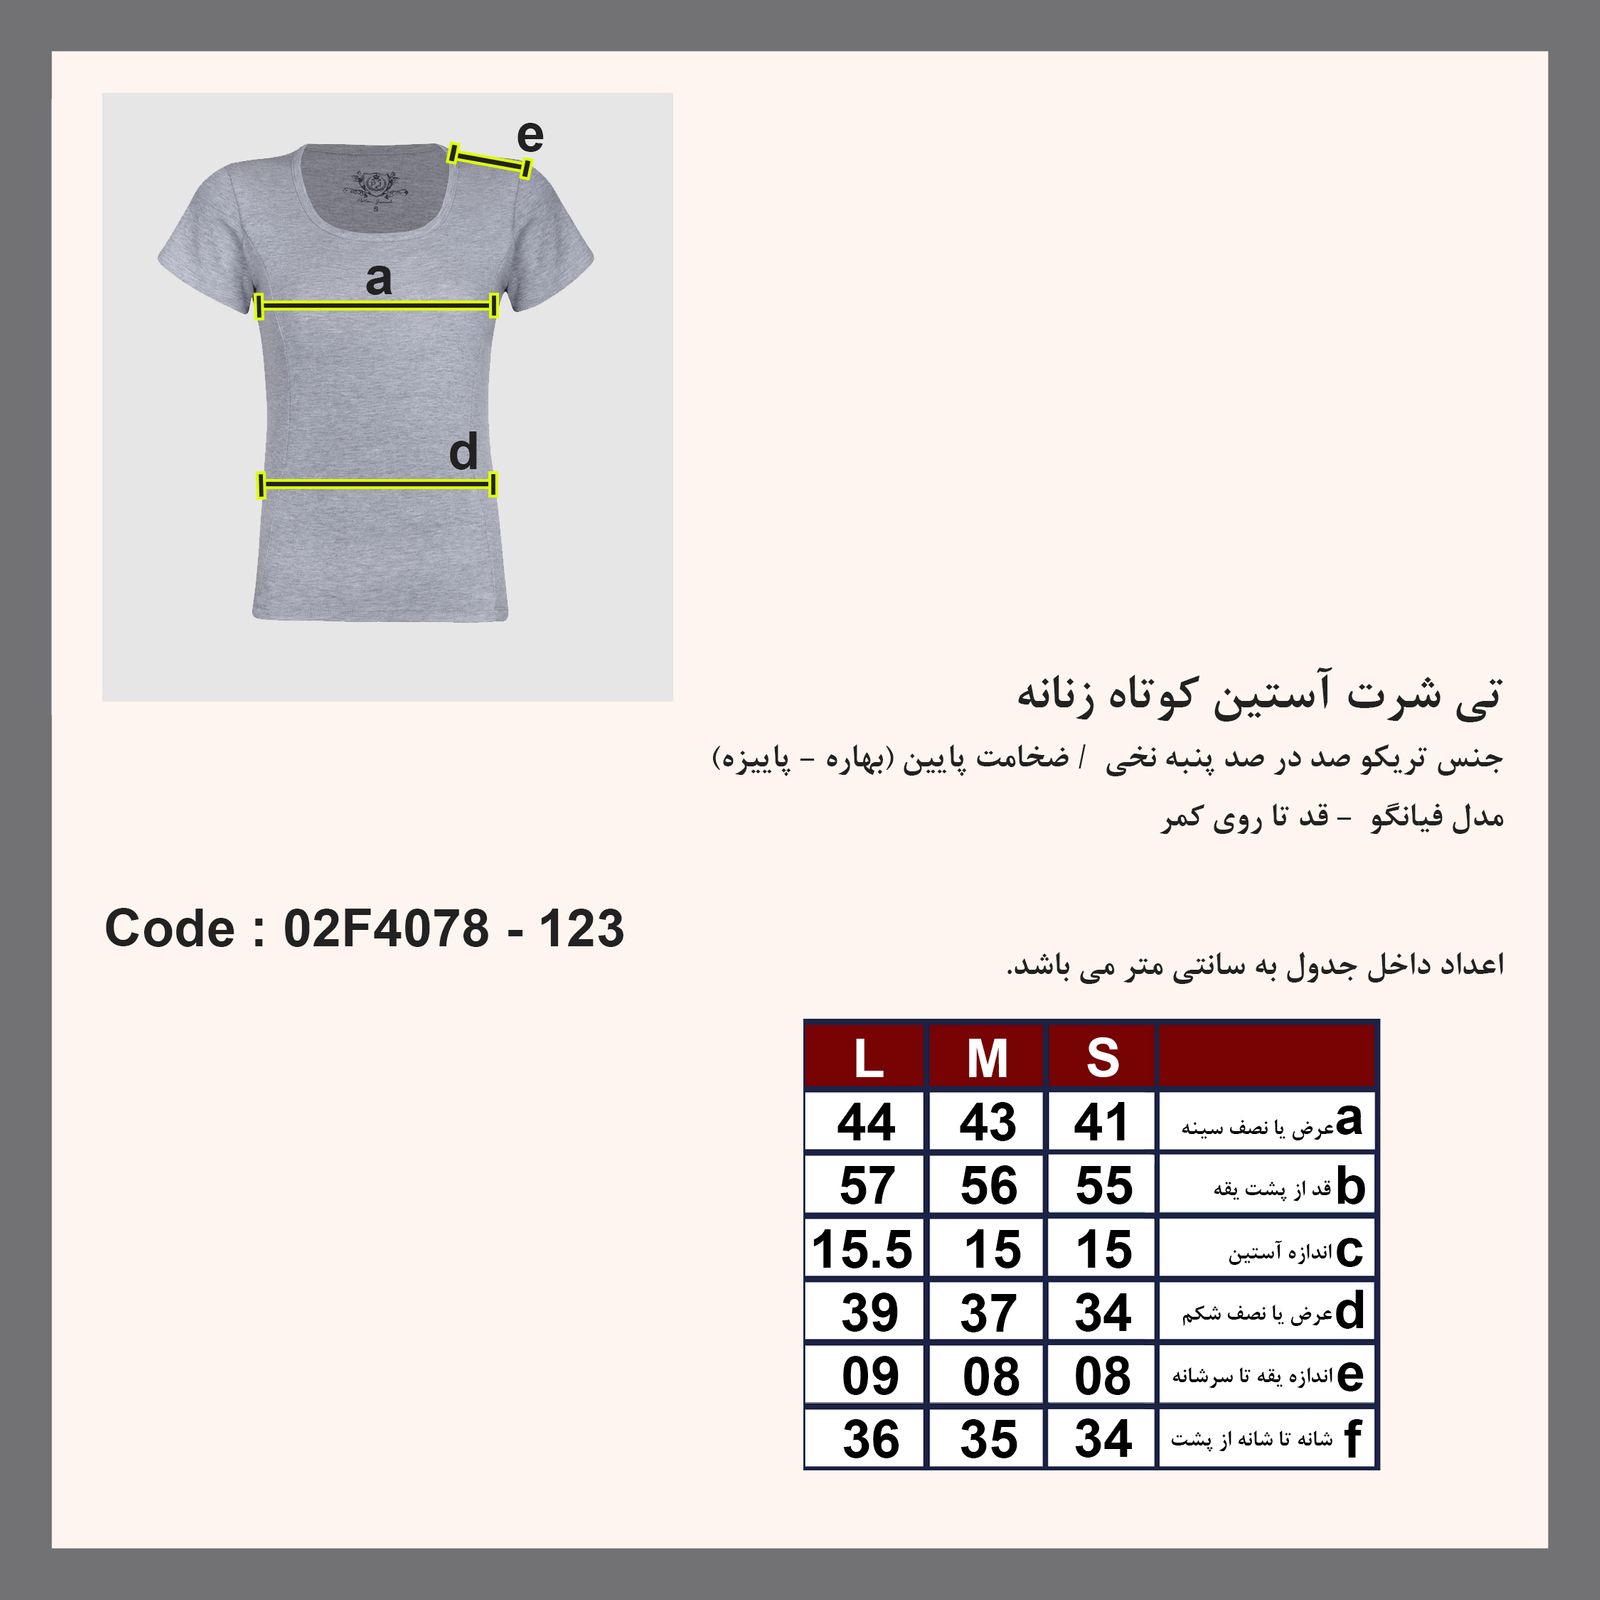 تی شرت آستین کوتاه زنانه پاتن جامه مدل فیانگو 131631020123846 رنگ مشکی -  - 7